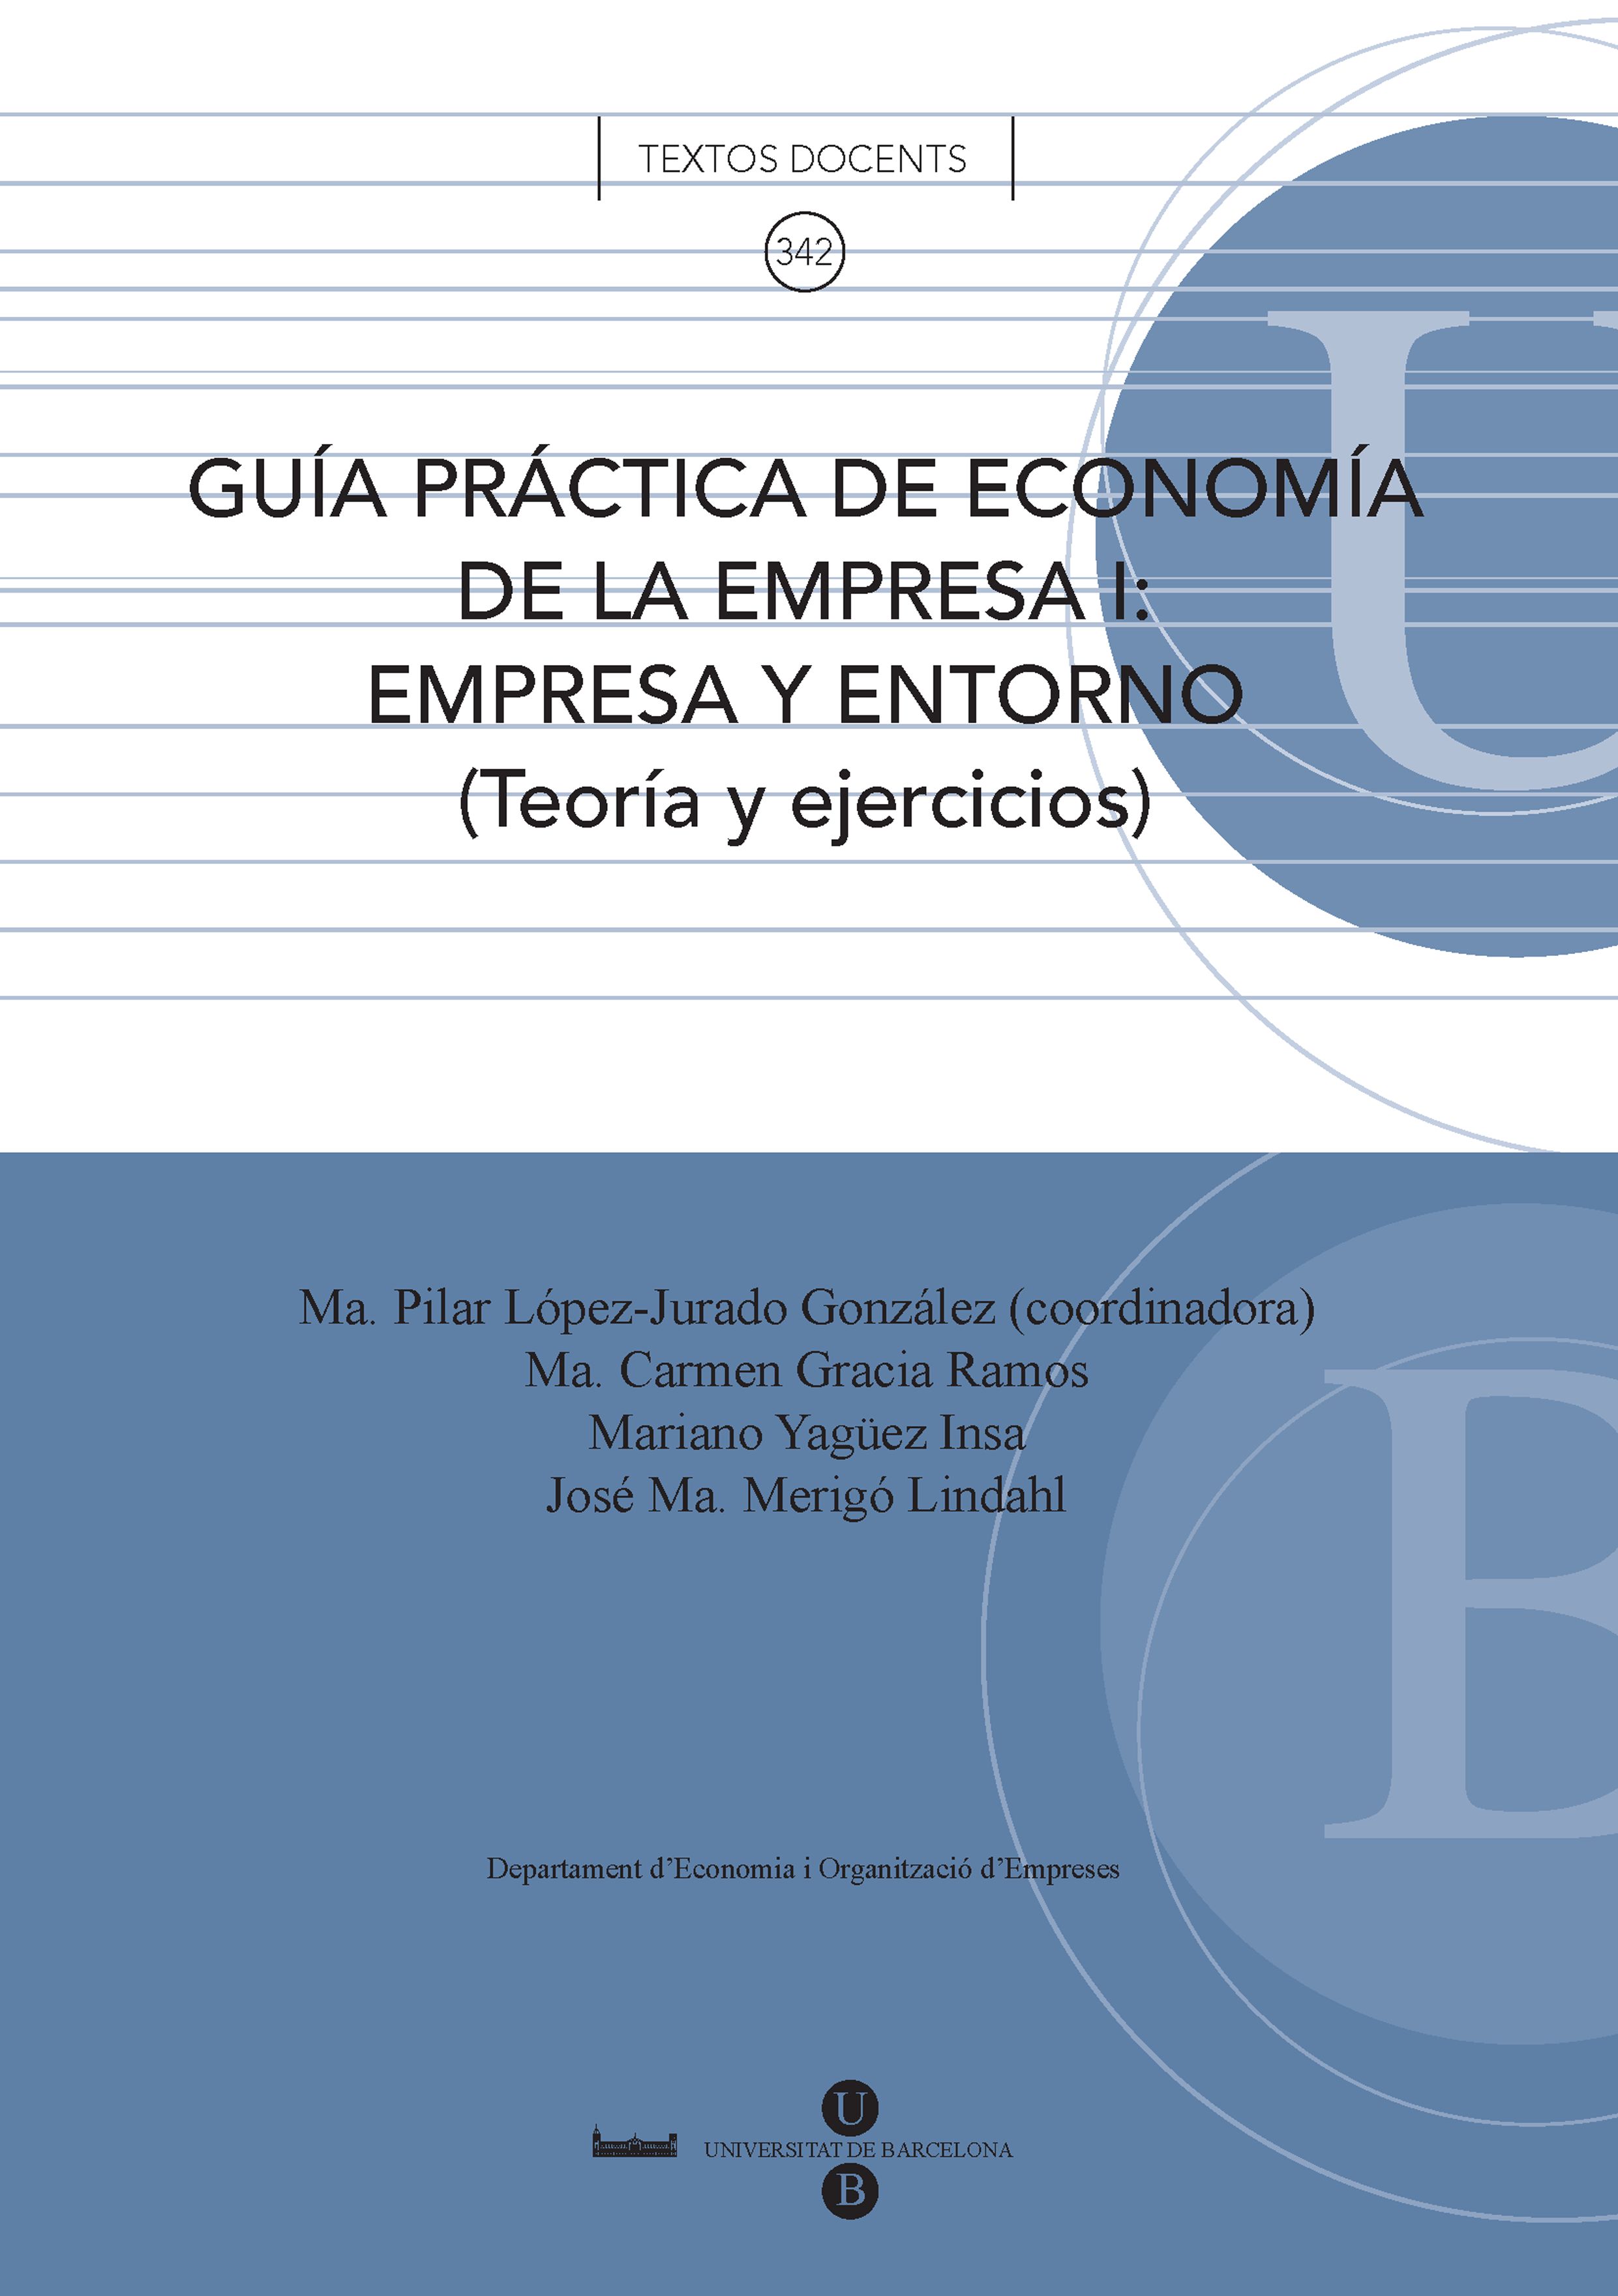 GuÃ­a prÃ¡ctica de economÃ­a de la empresa I: empresa y entorno (Teoria y ejercicios)